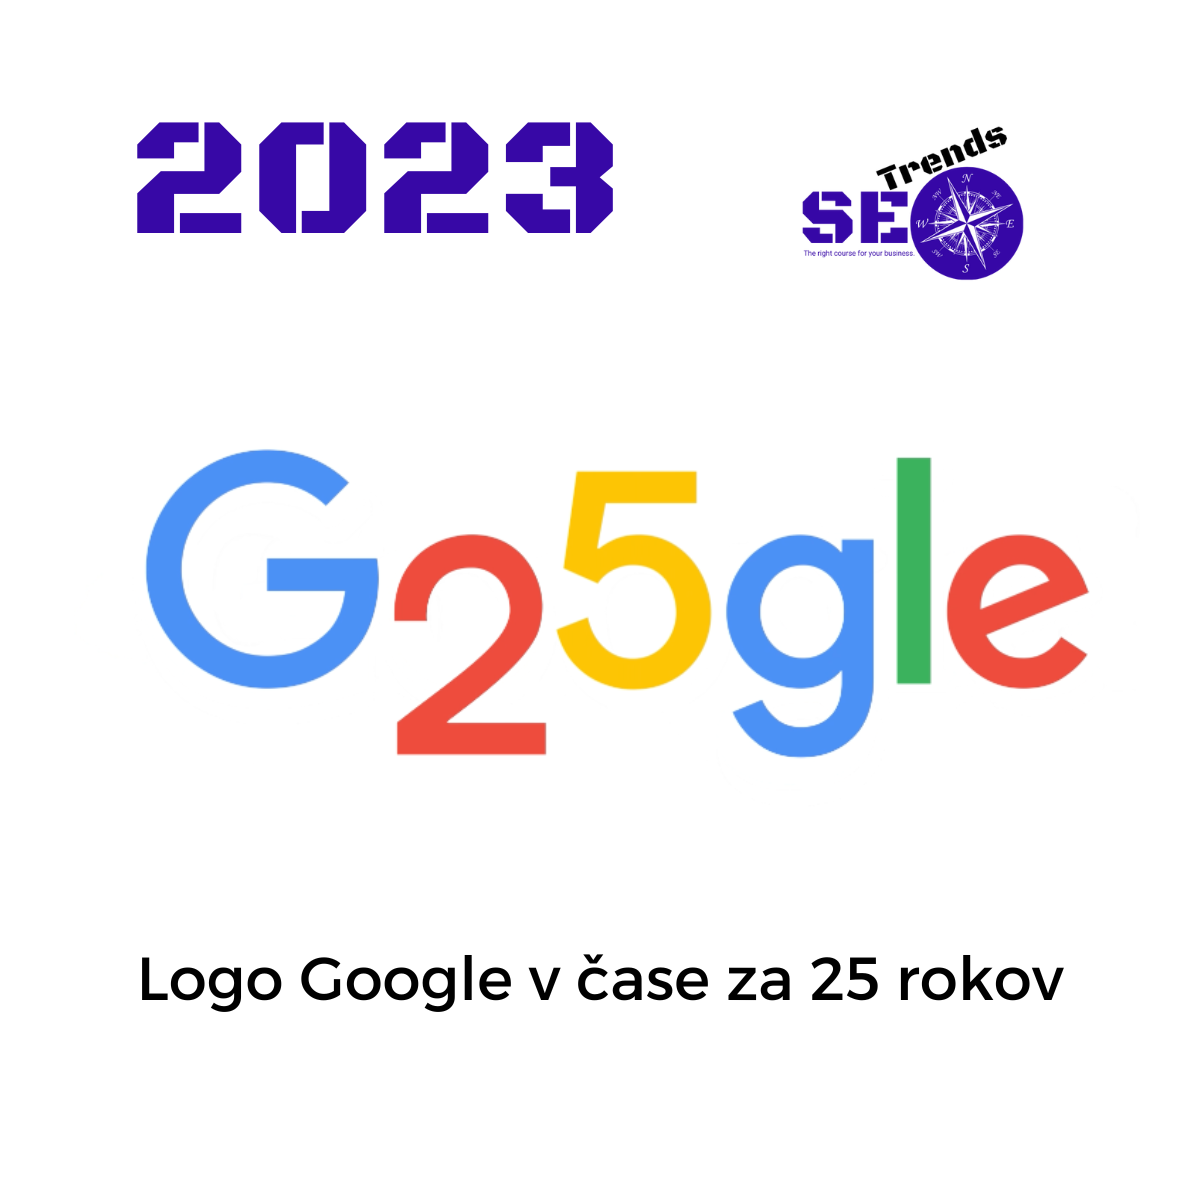 Rok 2023 logo: 25 rokov Google vyhľadávania.